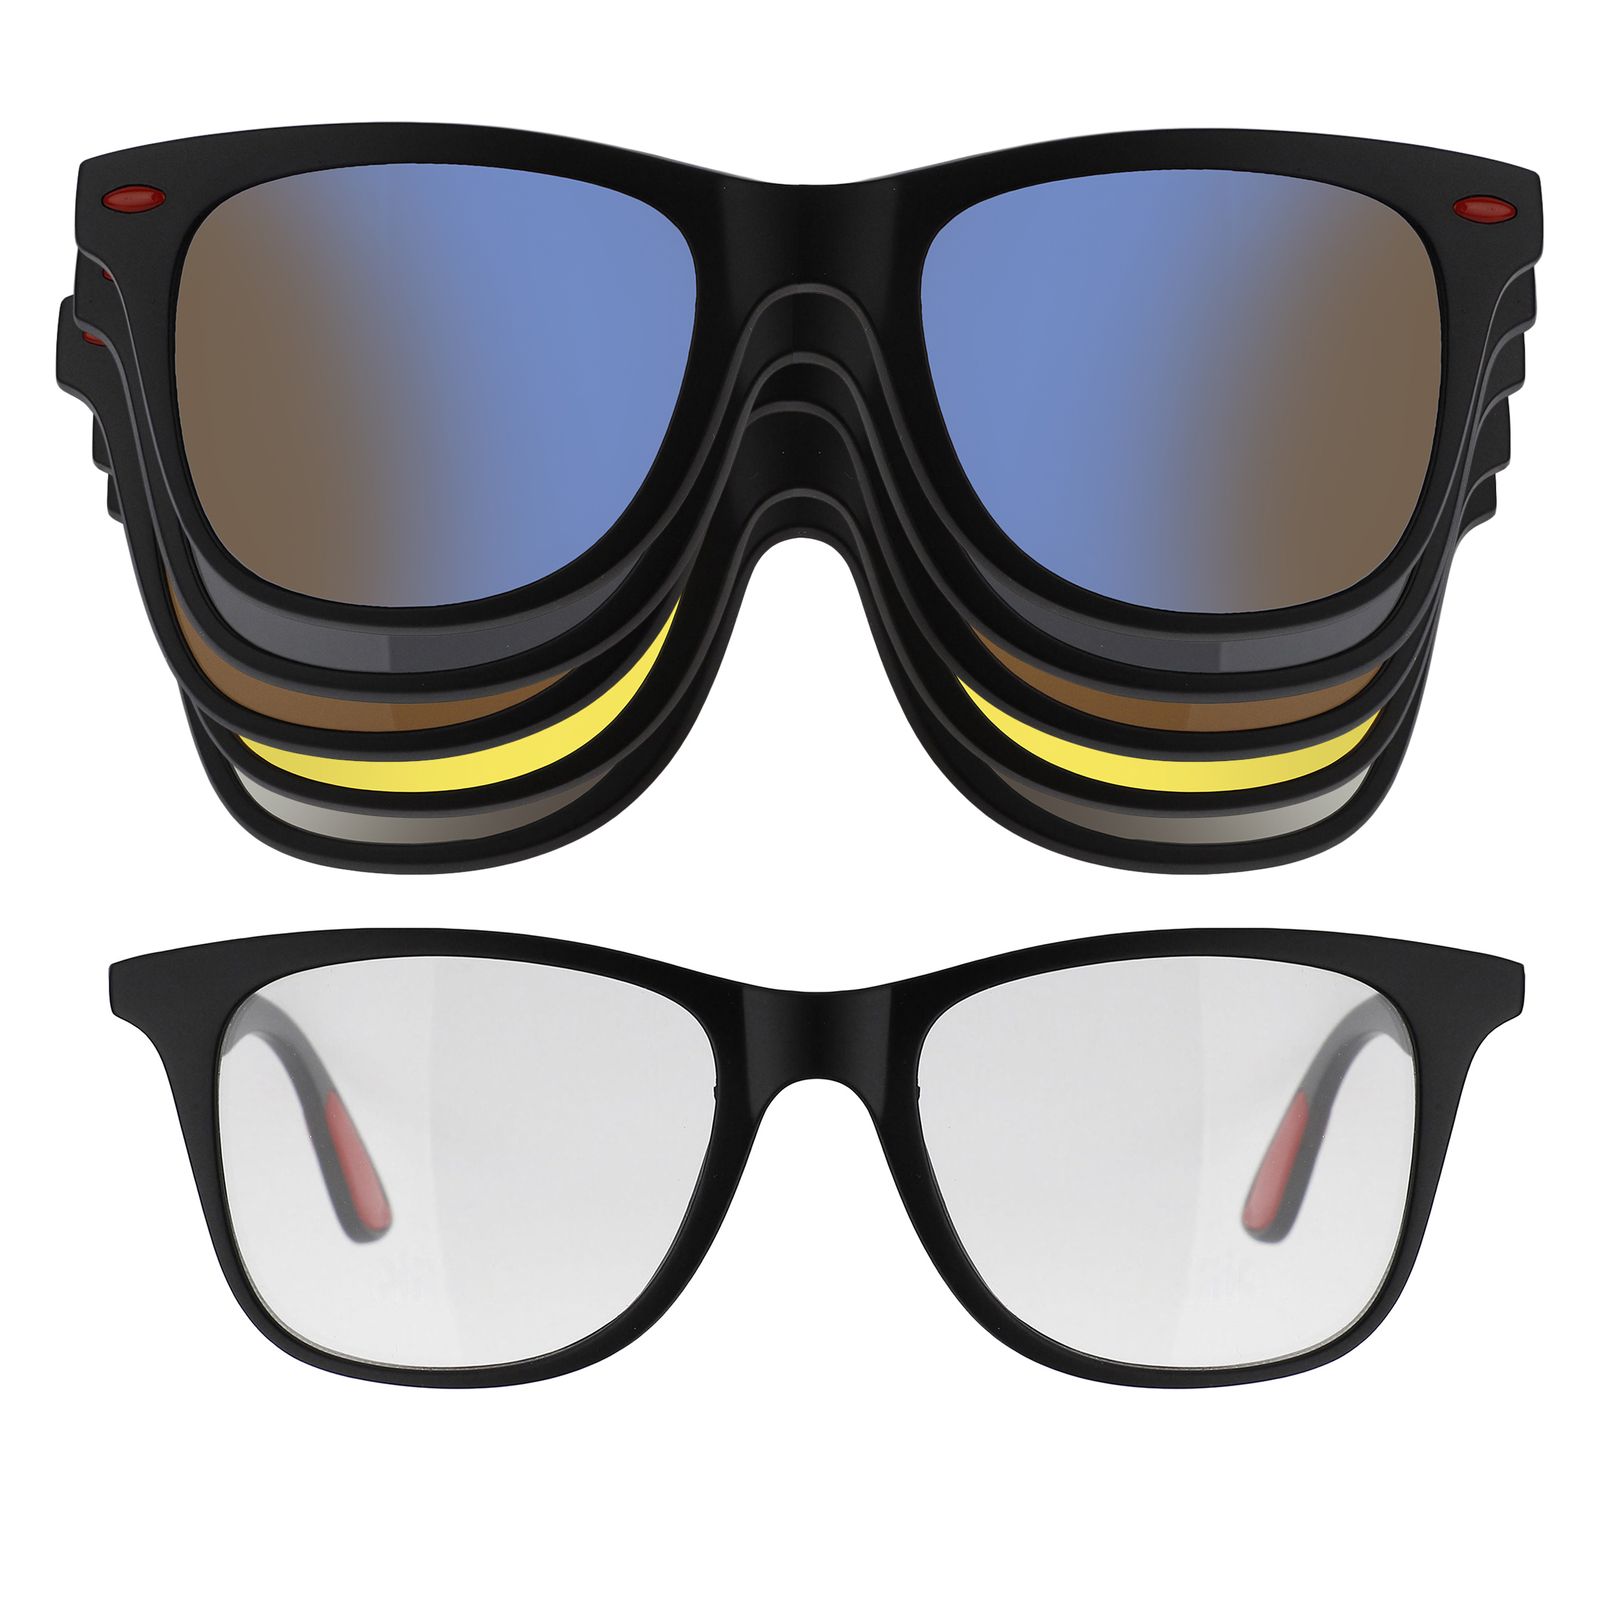 فریم عینک طبی به همراه کاور آفتابی دونیک مدل tr2317-c2 مجموعه 6 عددی -  - 1